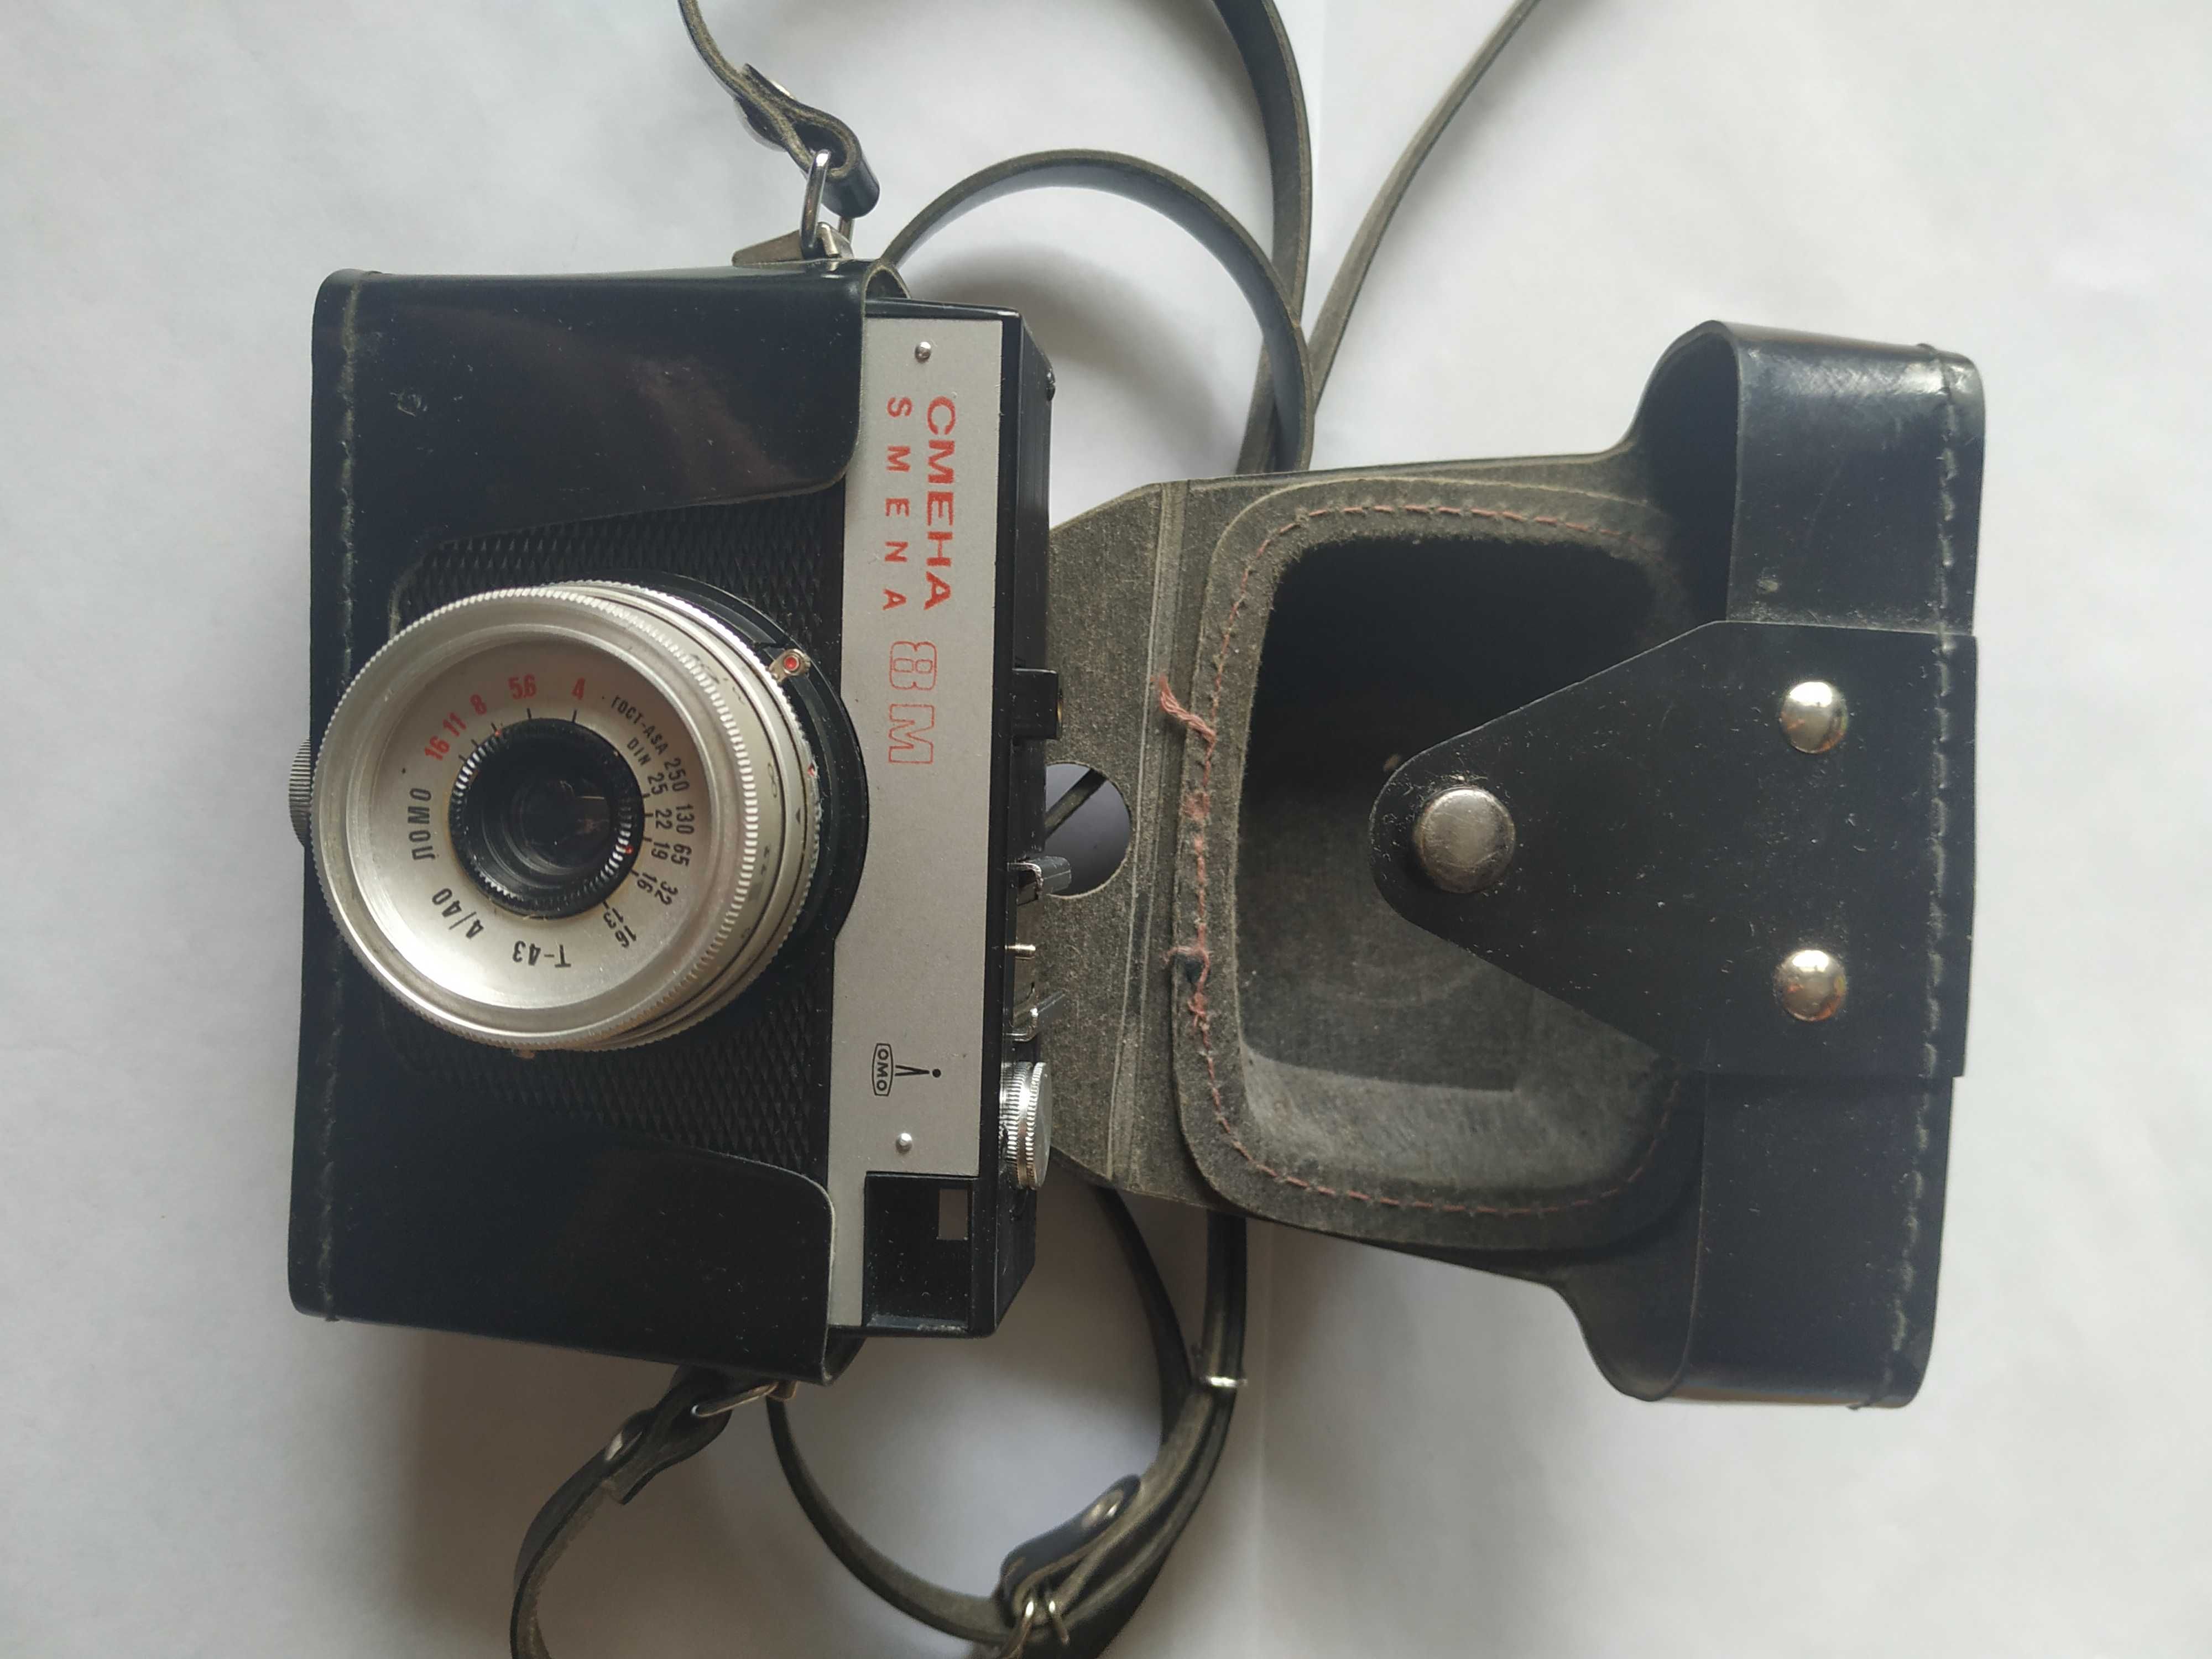 Фотоаппарат плёночный Смена 8 м.СССР